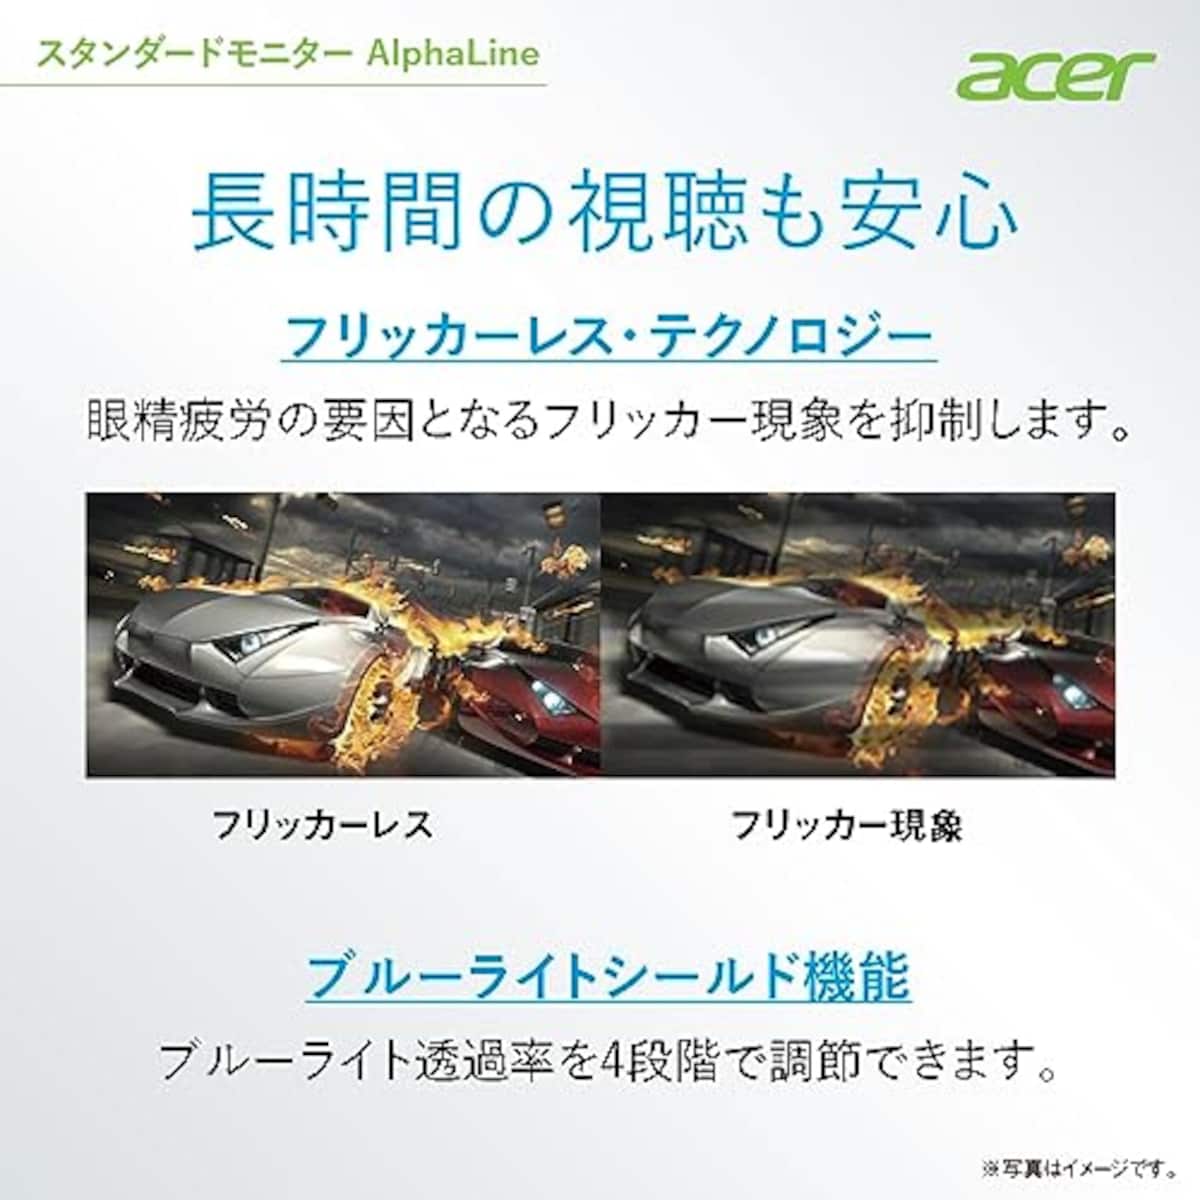  【Amazon.co.jp限定】日本エイサー Acer スタンダードモニター 27インチ IPS フルHD 100Hz 1ms スピーカー・ヘッドホン端子搭載 HDMI1.4 AMD FreeSync EK271Ebmix画像5 